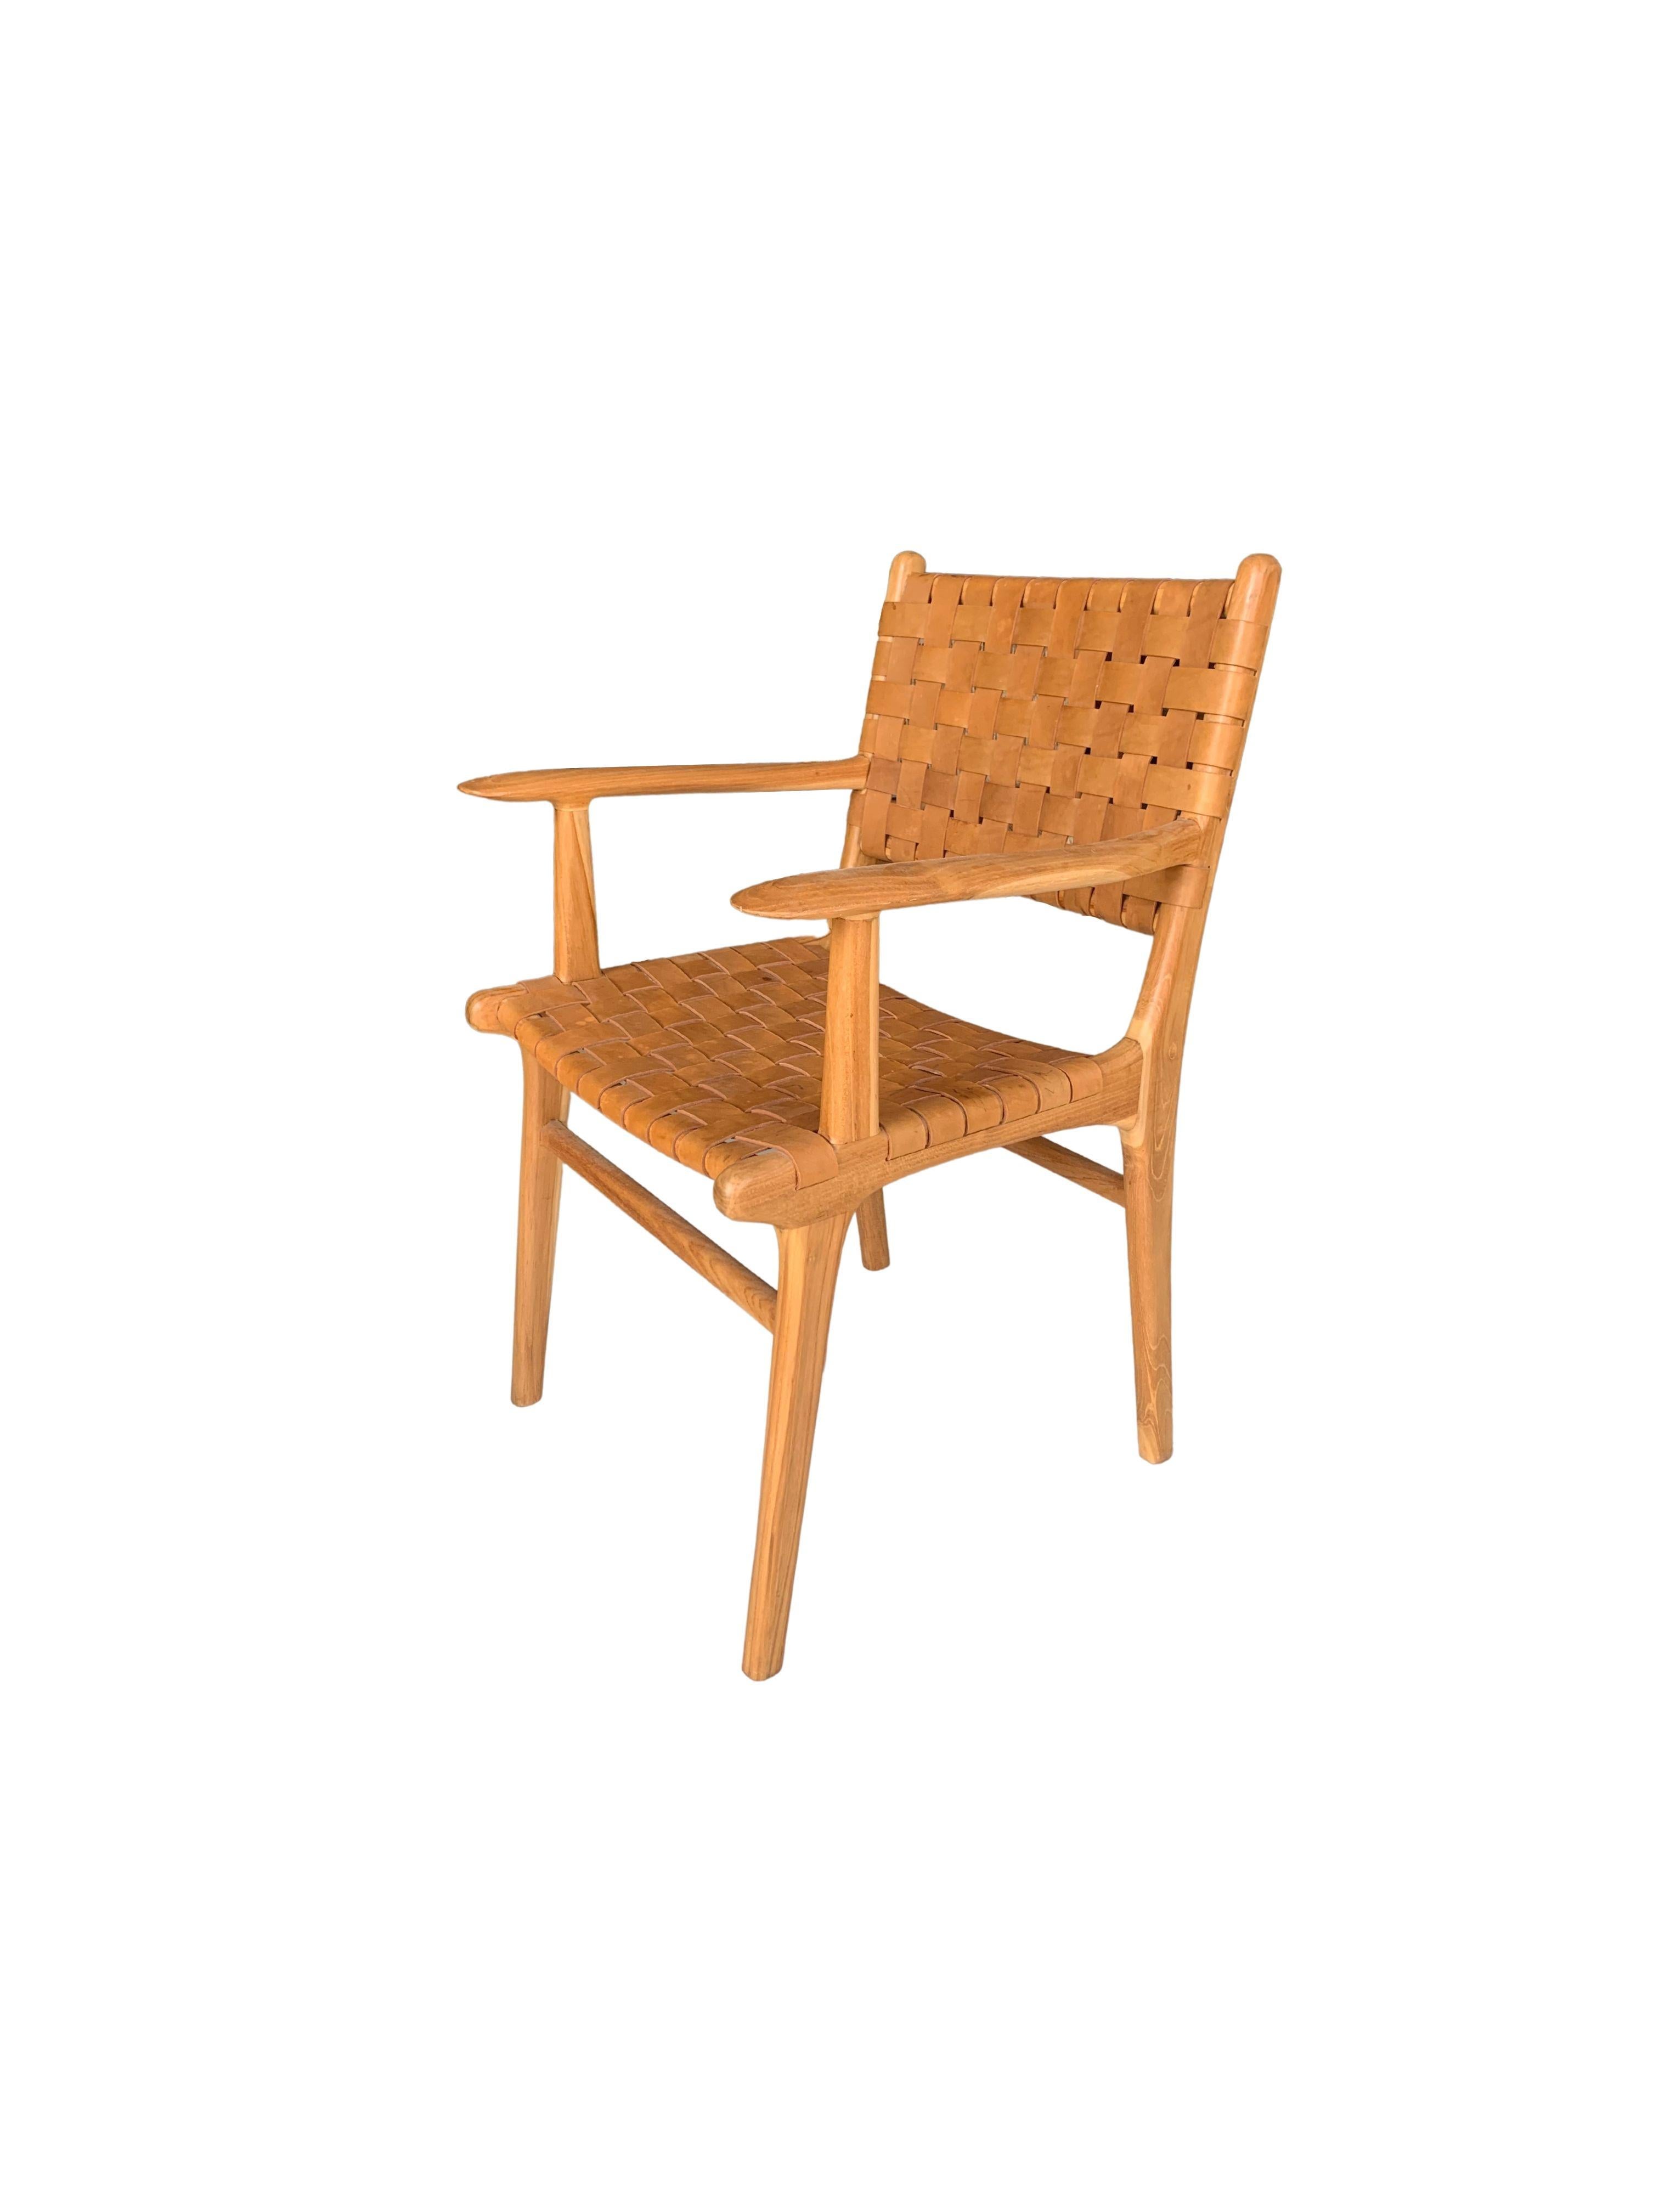 Une chaise à sangle en teck et en cuir tissé, fabriquée à la main. Ces chaises sont fabriquées par des artisans locaux selon une technique d'assemblage du bois sans clou. Ils présentent une texture bois subtile et sont robustes et résistants.